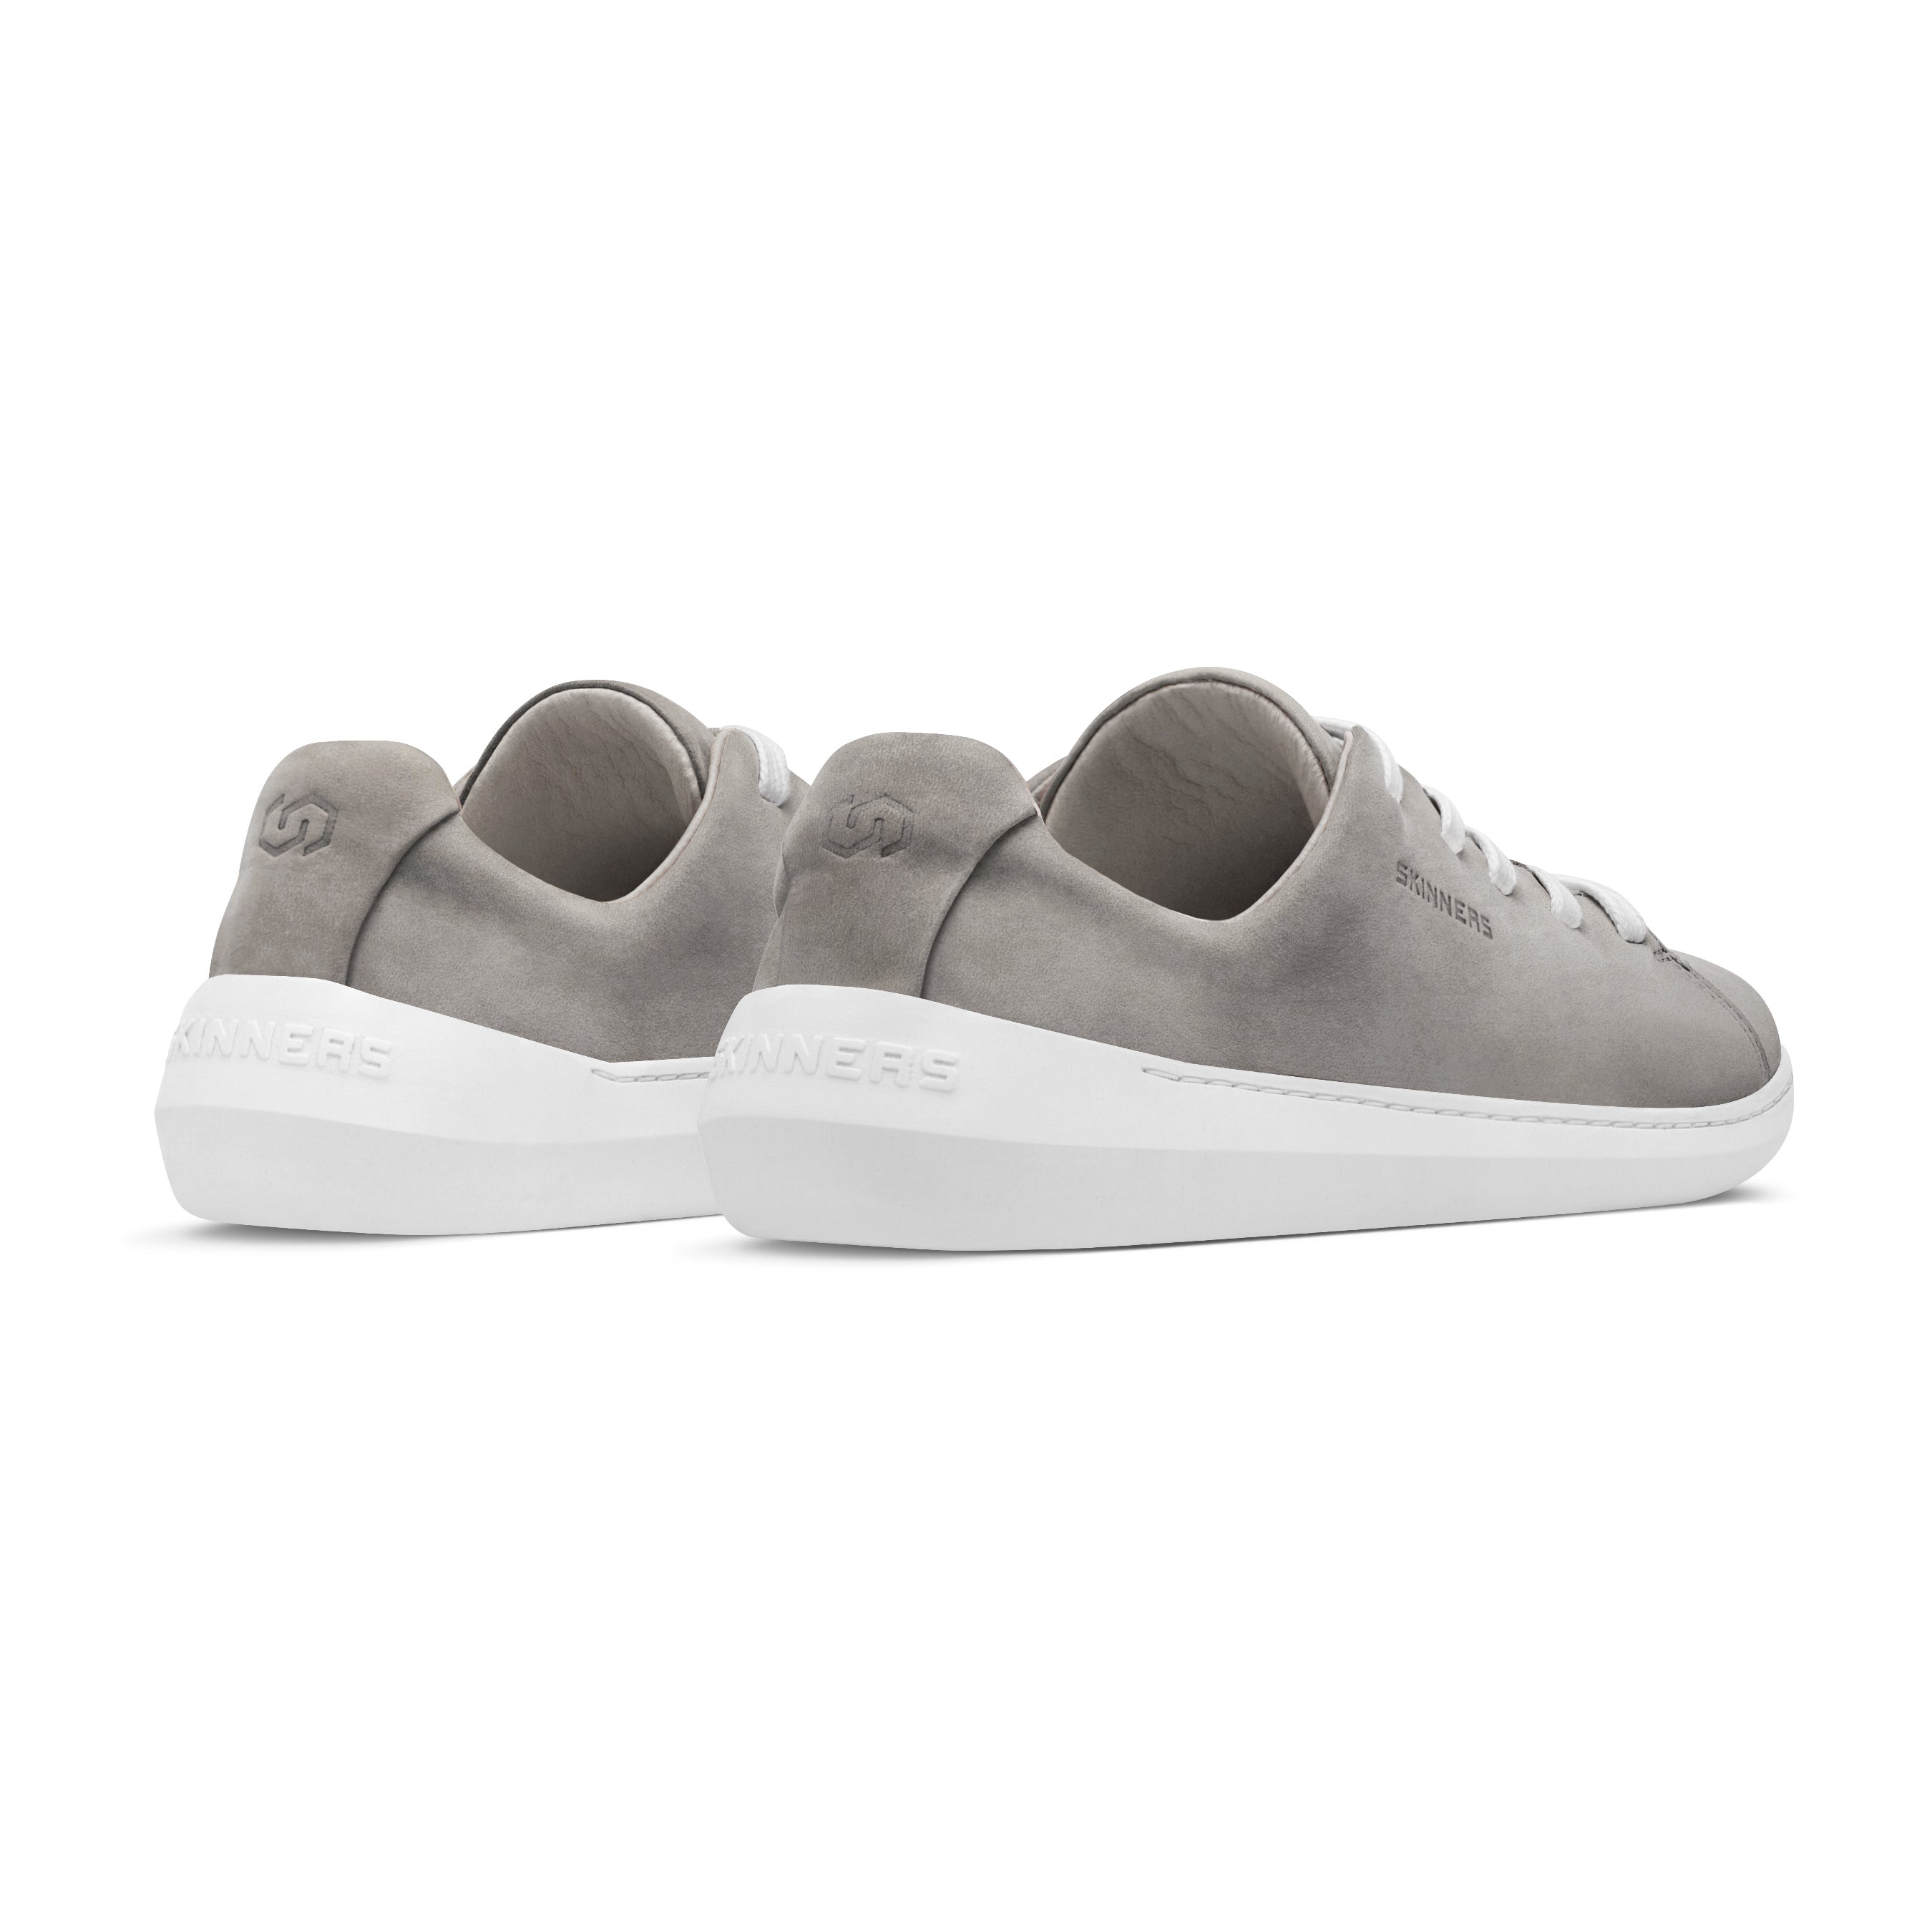 Mærkbare Walker barfods sneakers til kvinder og mænd i farven grey / white, bagfra